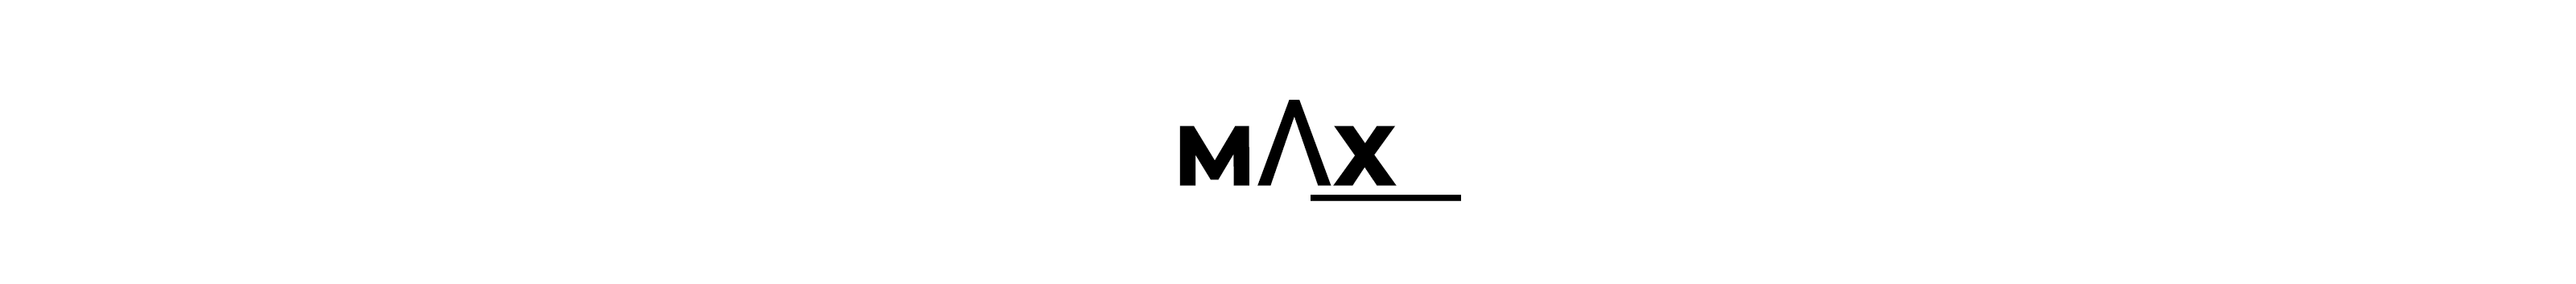 ‎MΛX ‎'s profile banner